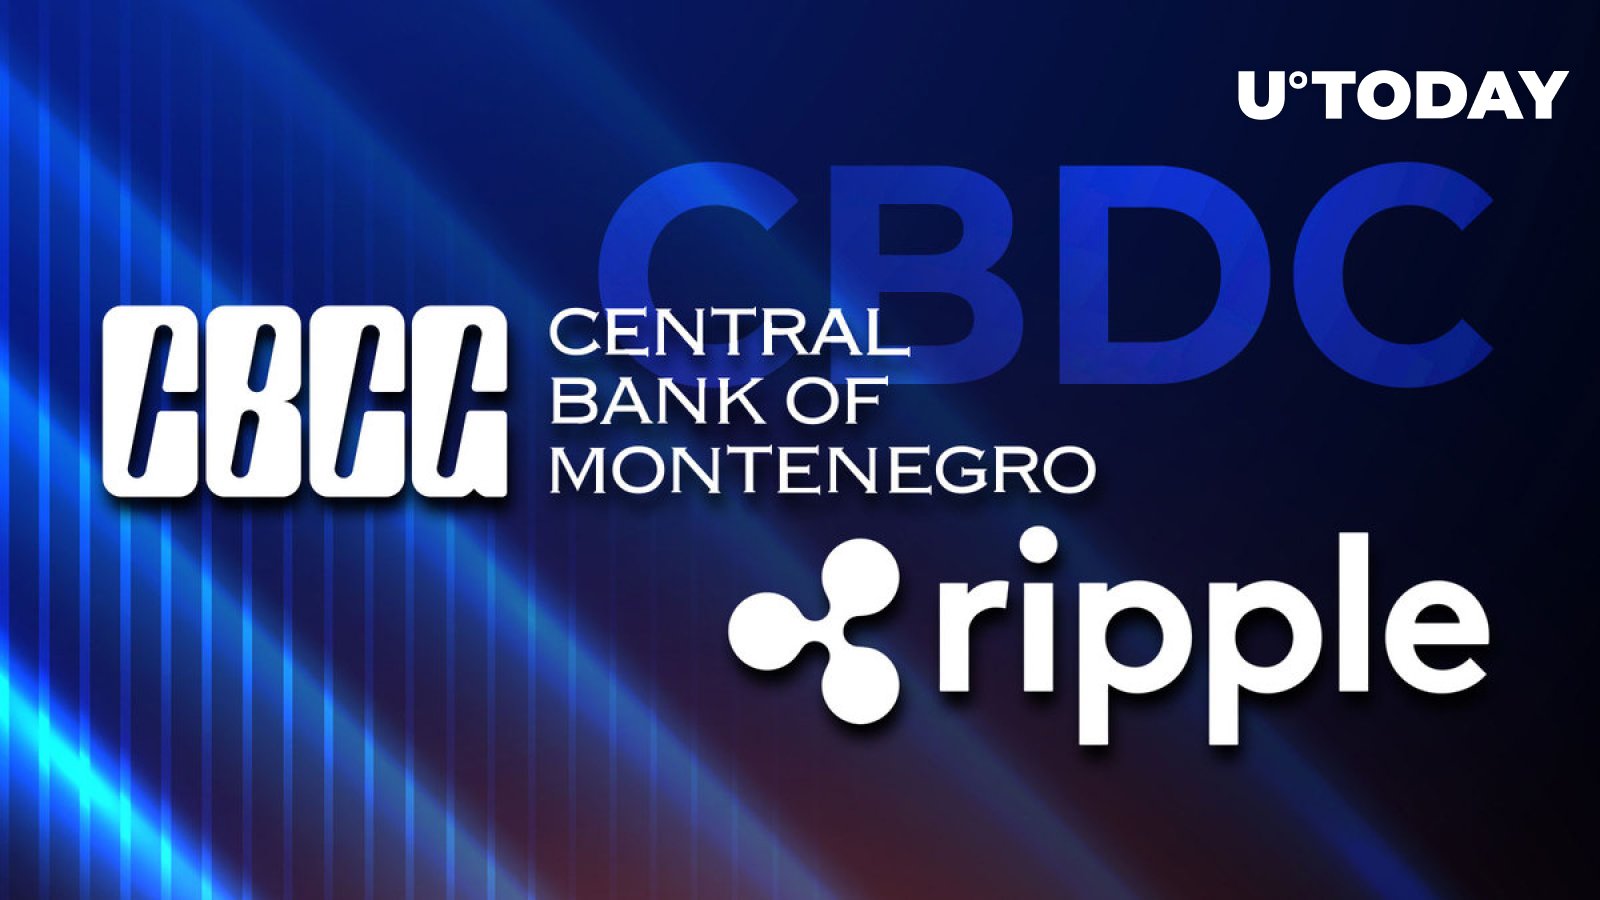 ریپل با بانک مرکزی مونته نگرو برای توسعه CBDC و استیبل کوین شریک می شود